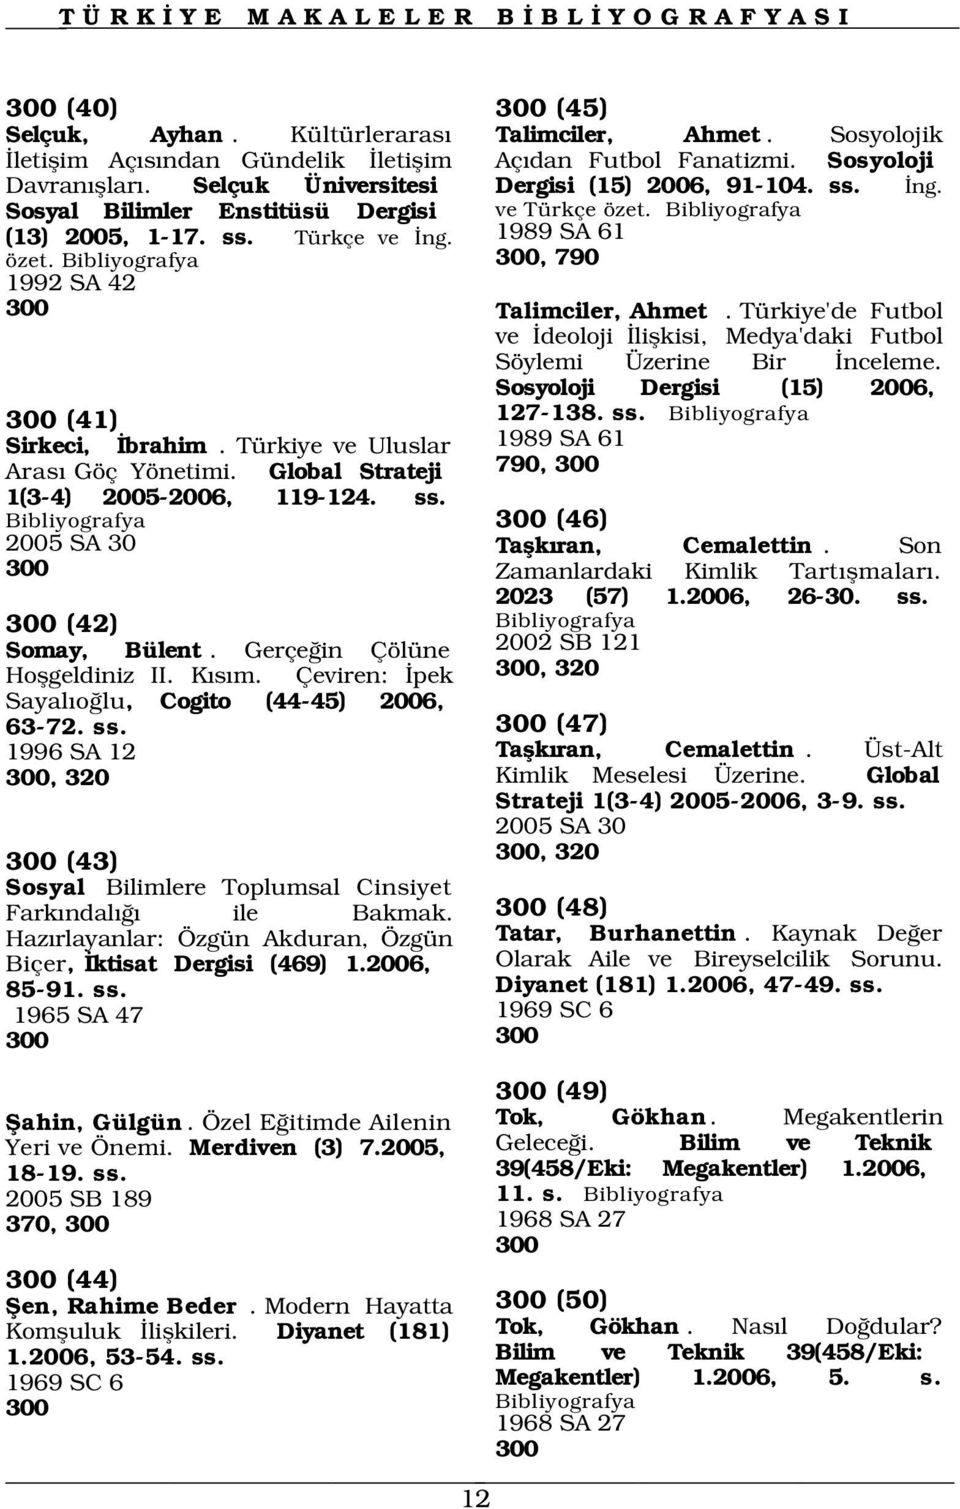 Türkiye'de Futbol ve deoloji liflkisi, Medya'daki Futbol Söylemi Üzerine Bir nceleme. Sosyoloji Dergisi (15) 2006, 300 (41) 127-138. ss. Sirkeci, brahim.